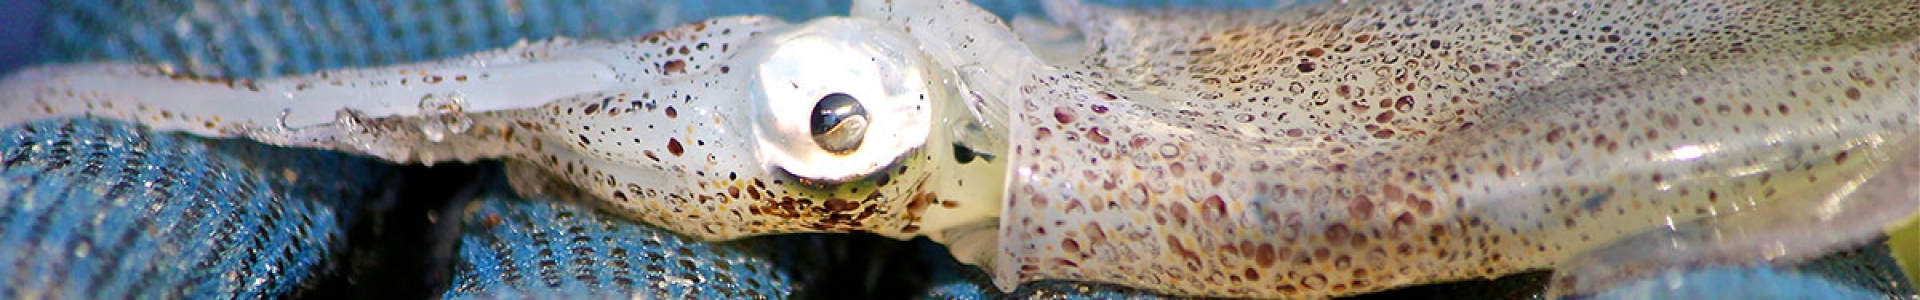 IMS-photo-of-Lolliguncula-brevis-aka-Atlantic-brief-squid